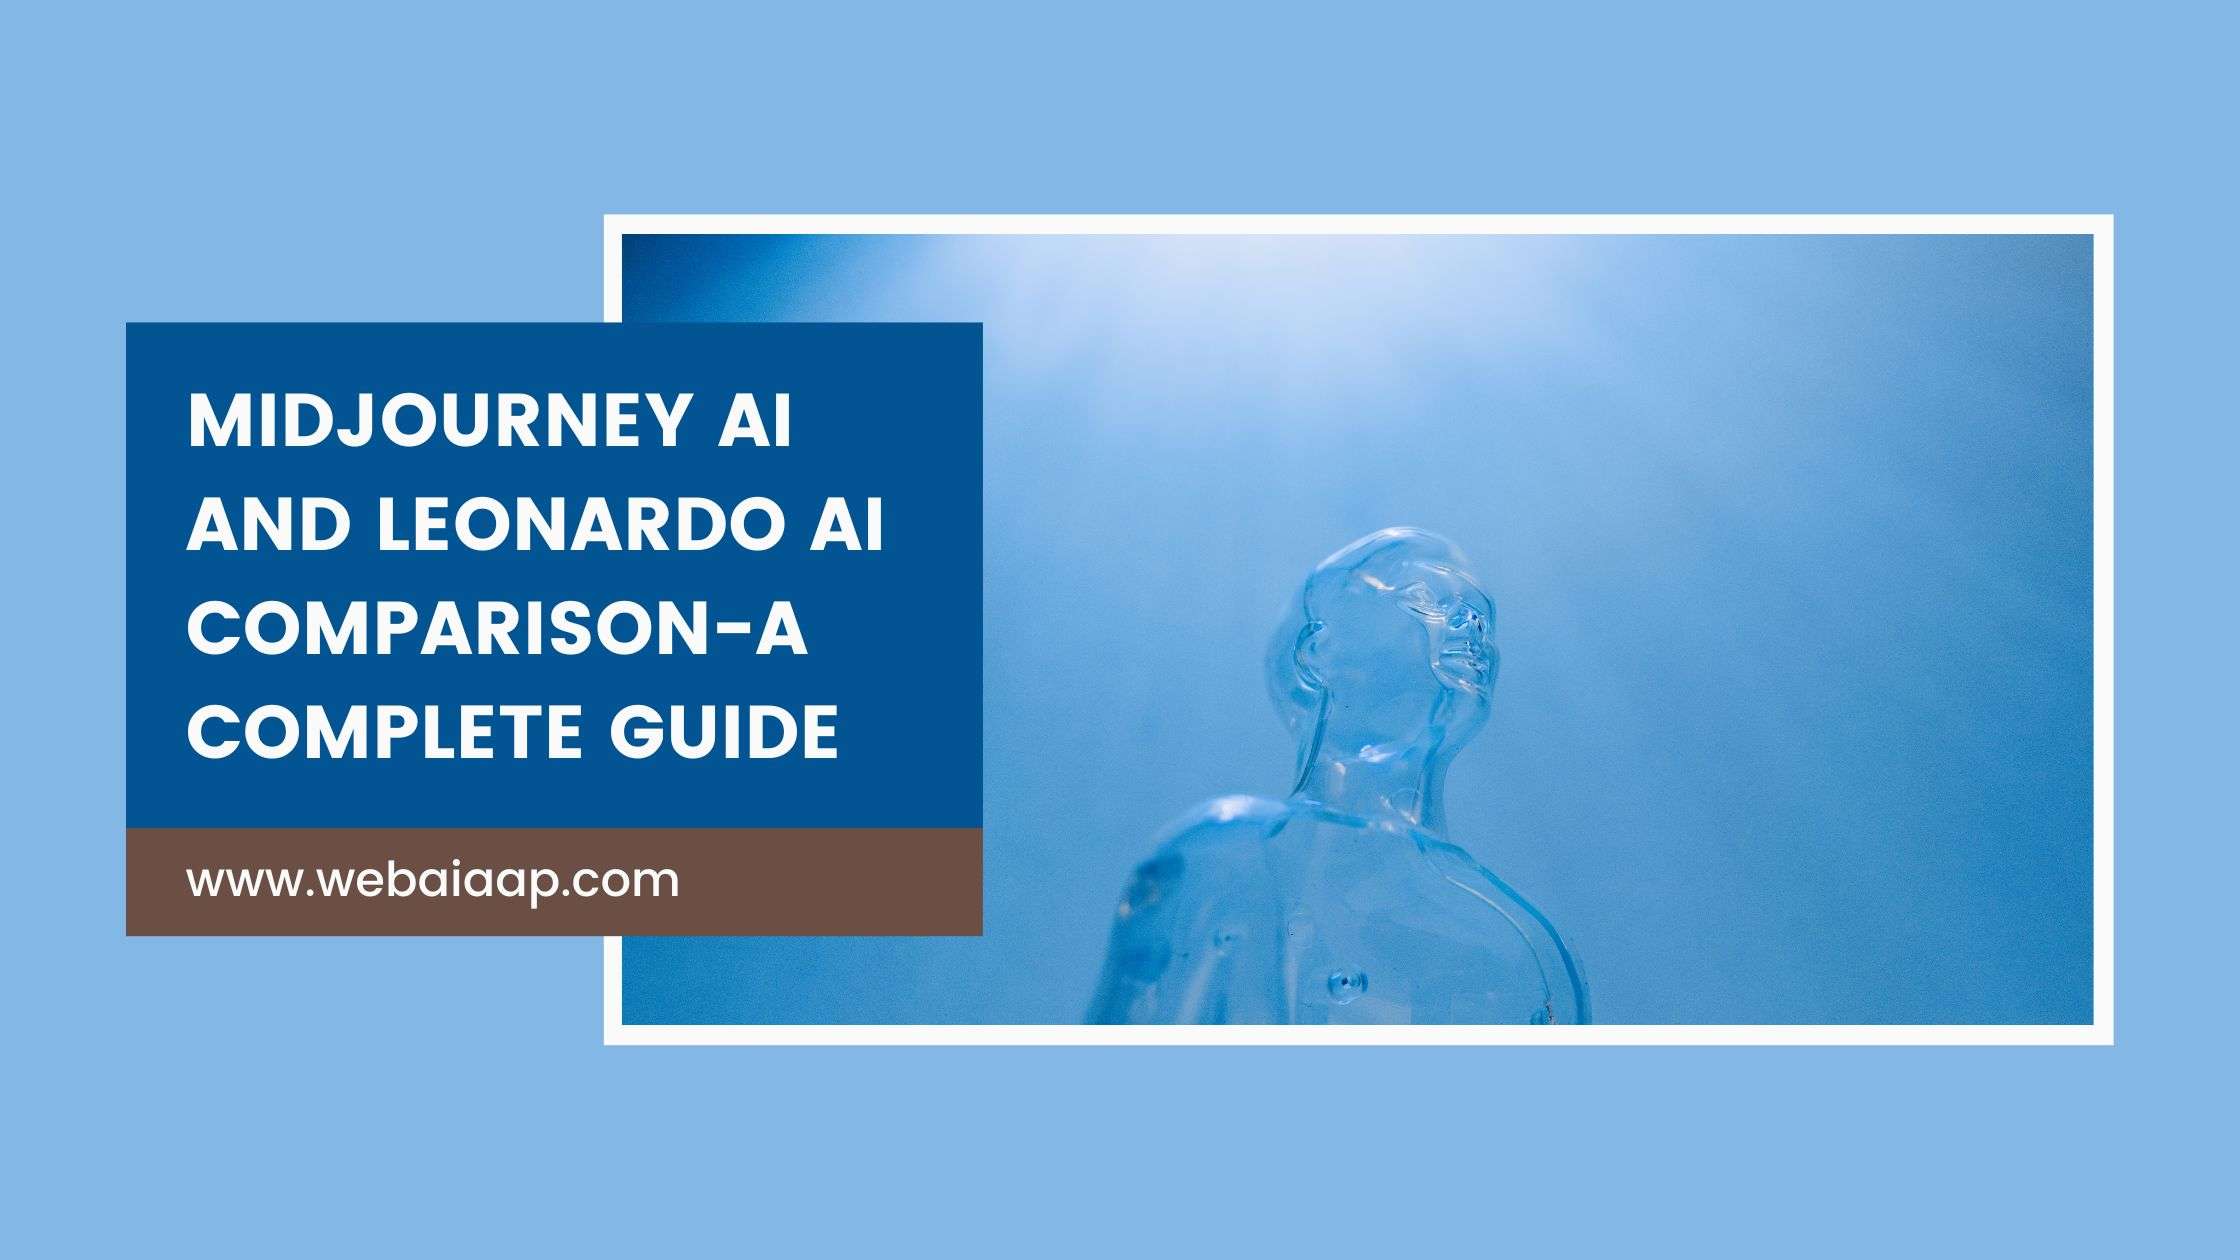 Midjourney AI and Leonardo AI Comparison-A Complete Guide